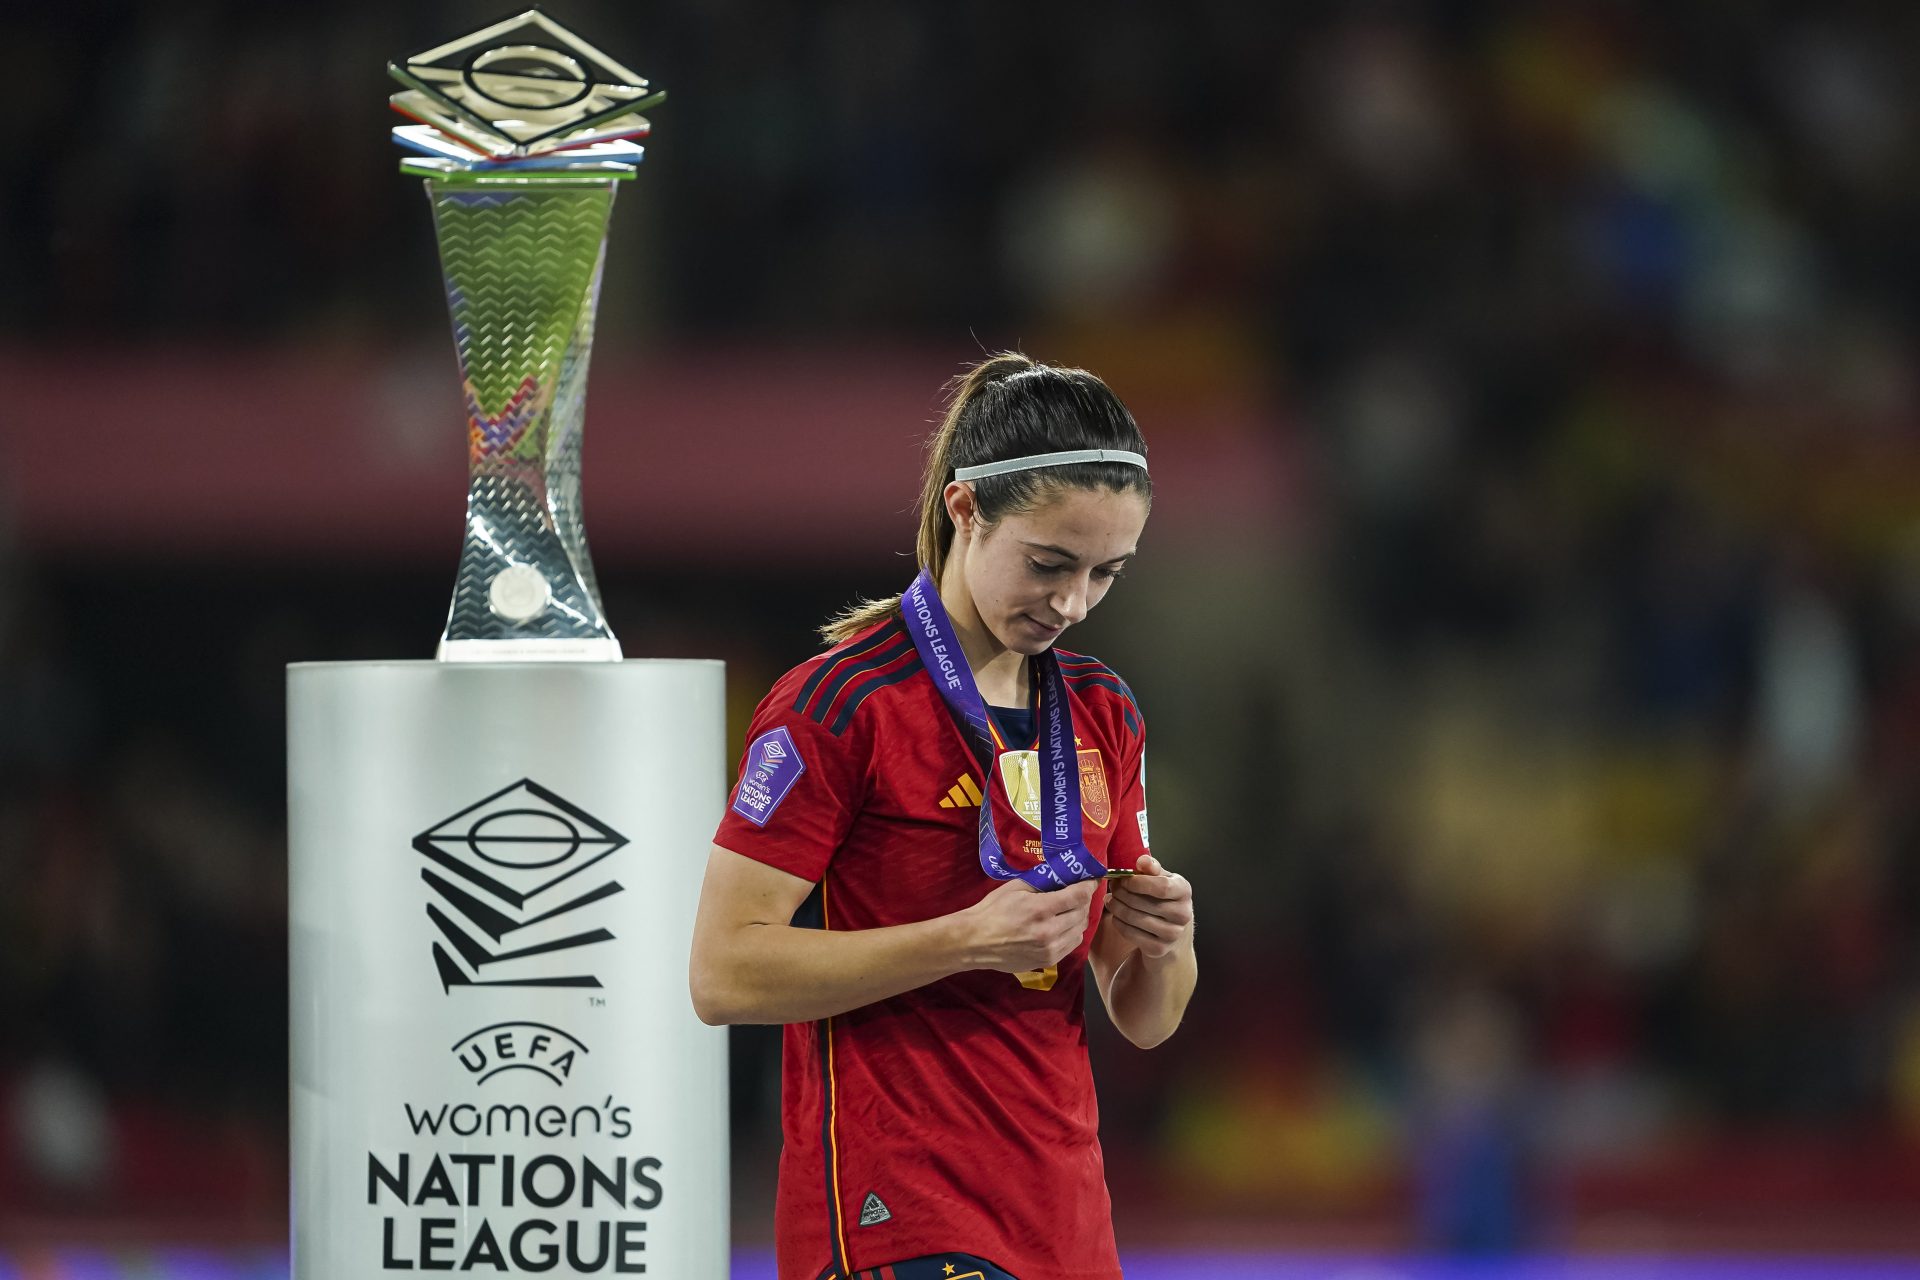 Die besten Bilder der Siegerinnen der UEFA Women's Nations League